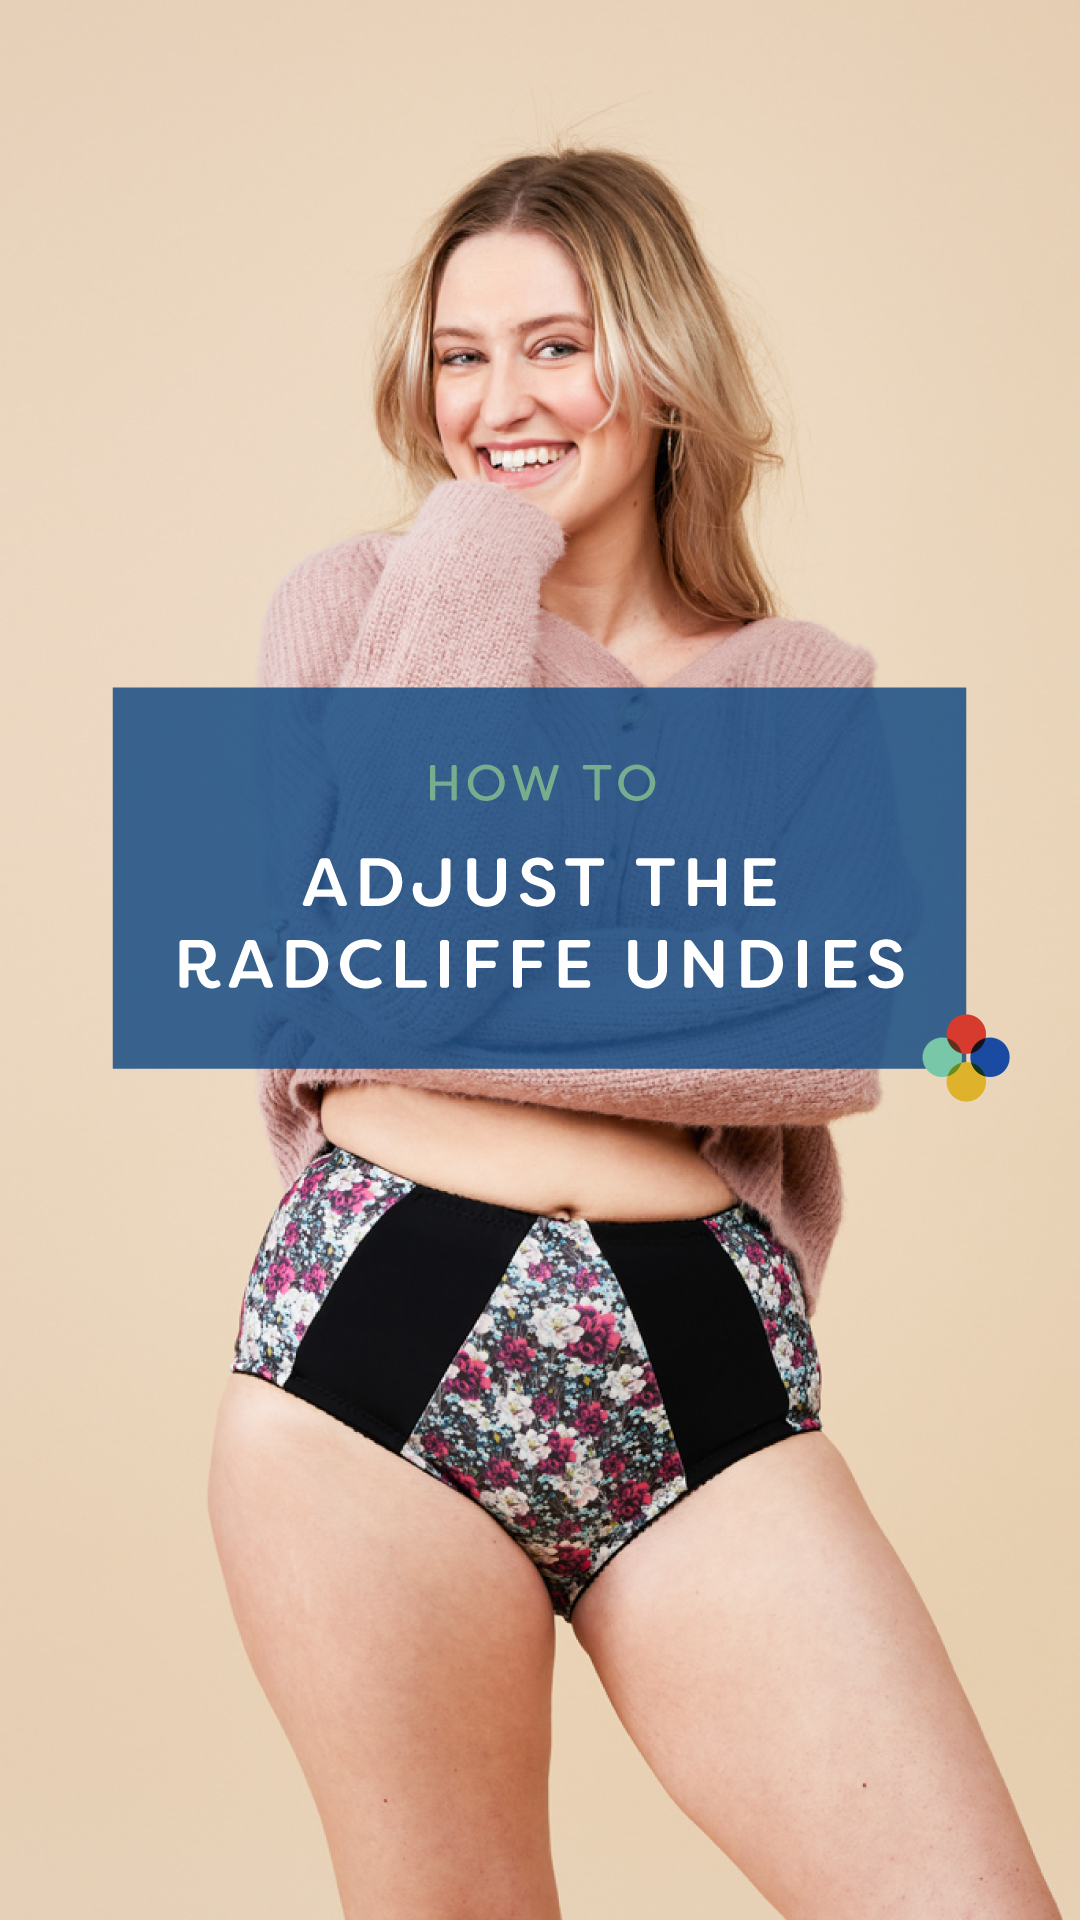 How to adjust an underwear pattern, featuring the Radcliffe Undies